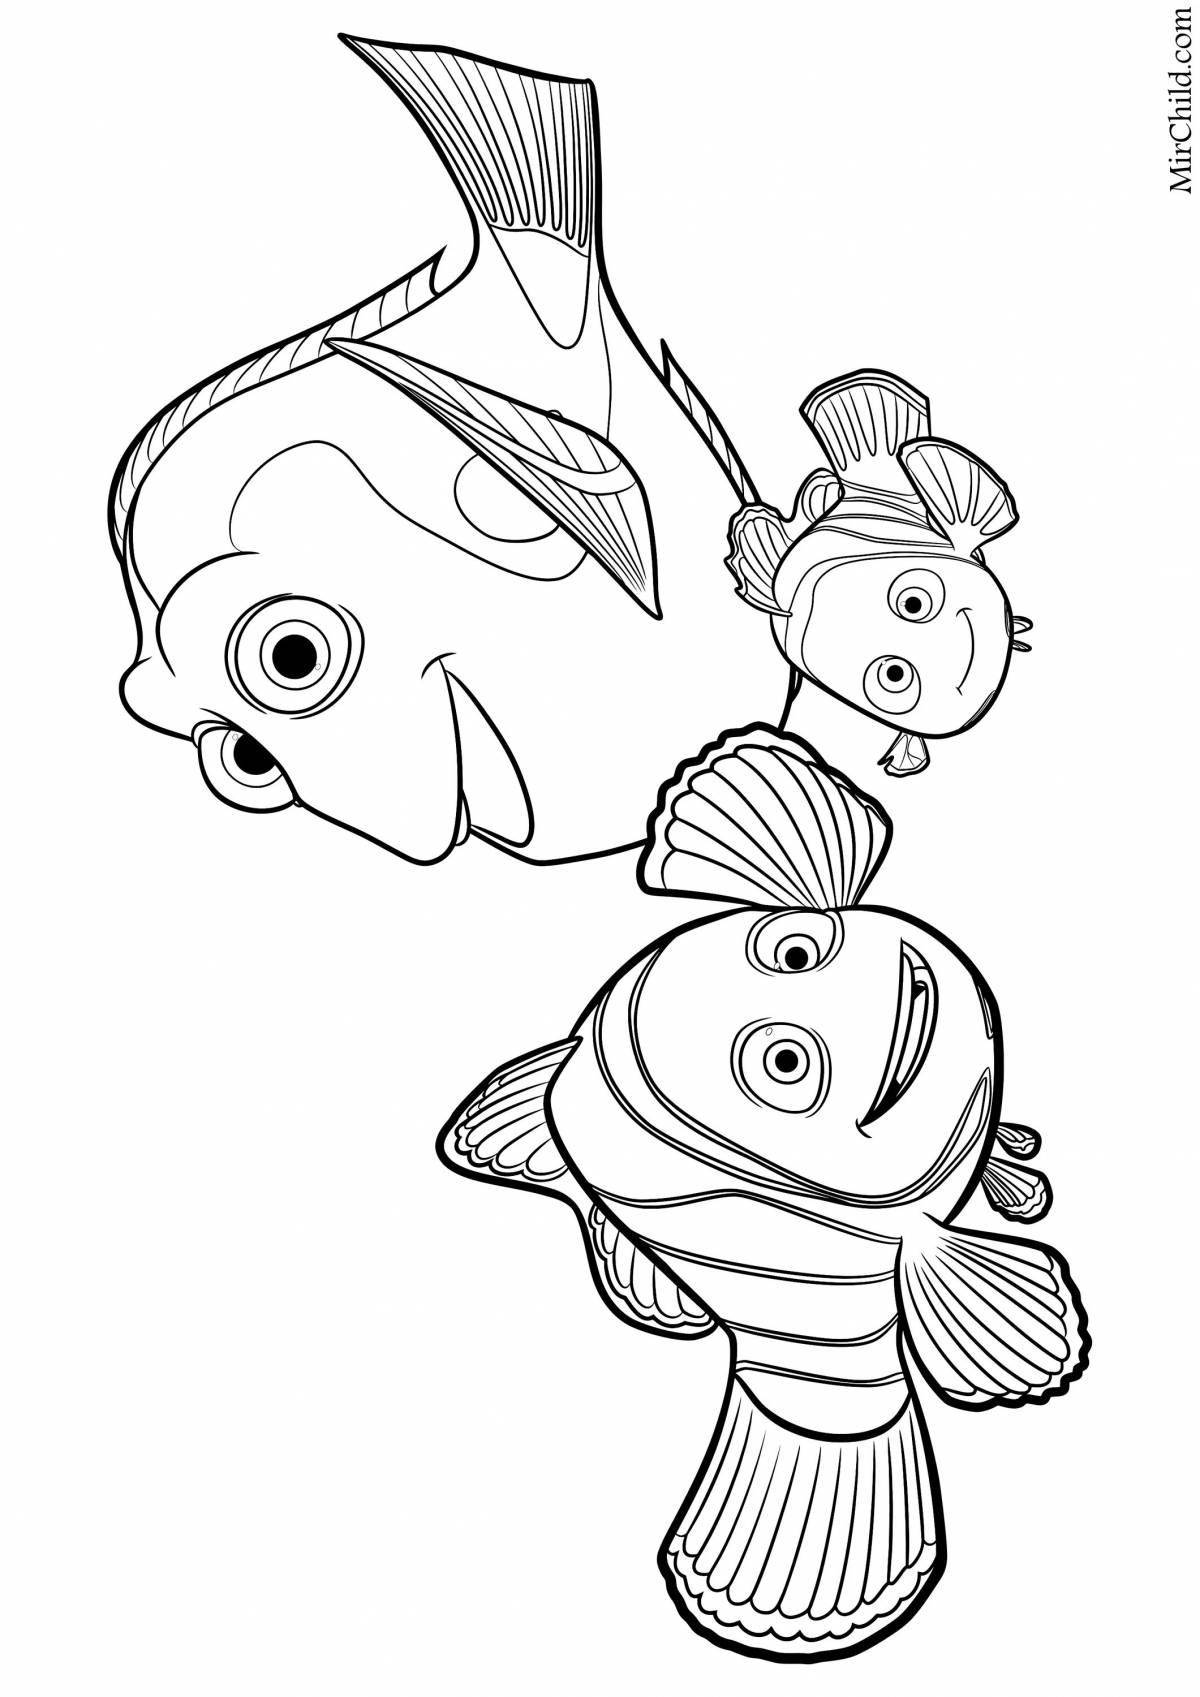 Nemo and dory #2